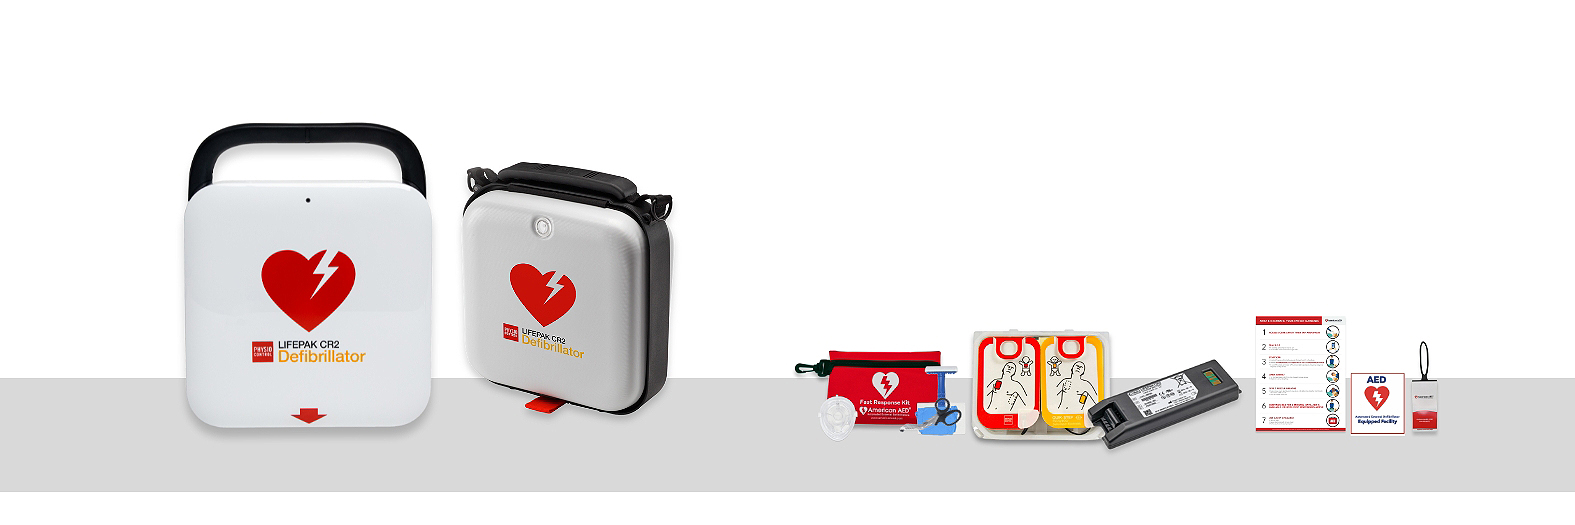 Physio-Control LIFEPAK CR 2 Defibrillator